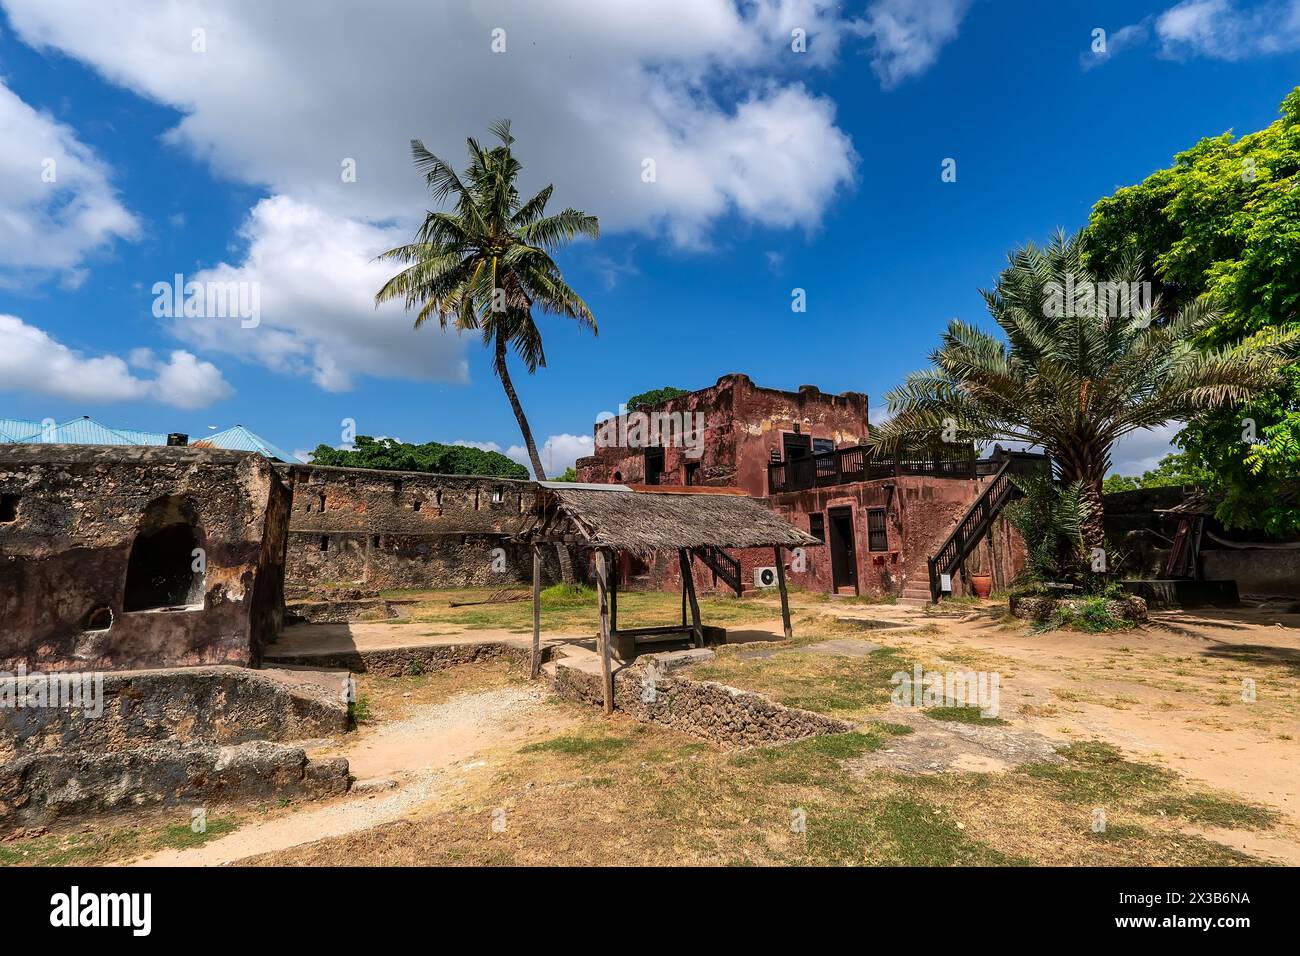 Vieux fort Jésus dans la ville kenyane de Mombasa sur la côte de l'océan Indien. Fort Jesus est une fortification portugaise à Mombasa, au Kenya. C'était buil Banque D'Images